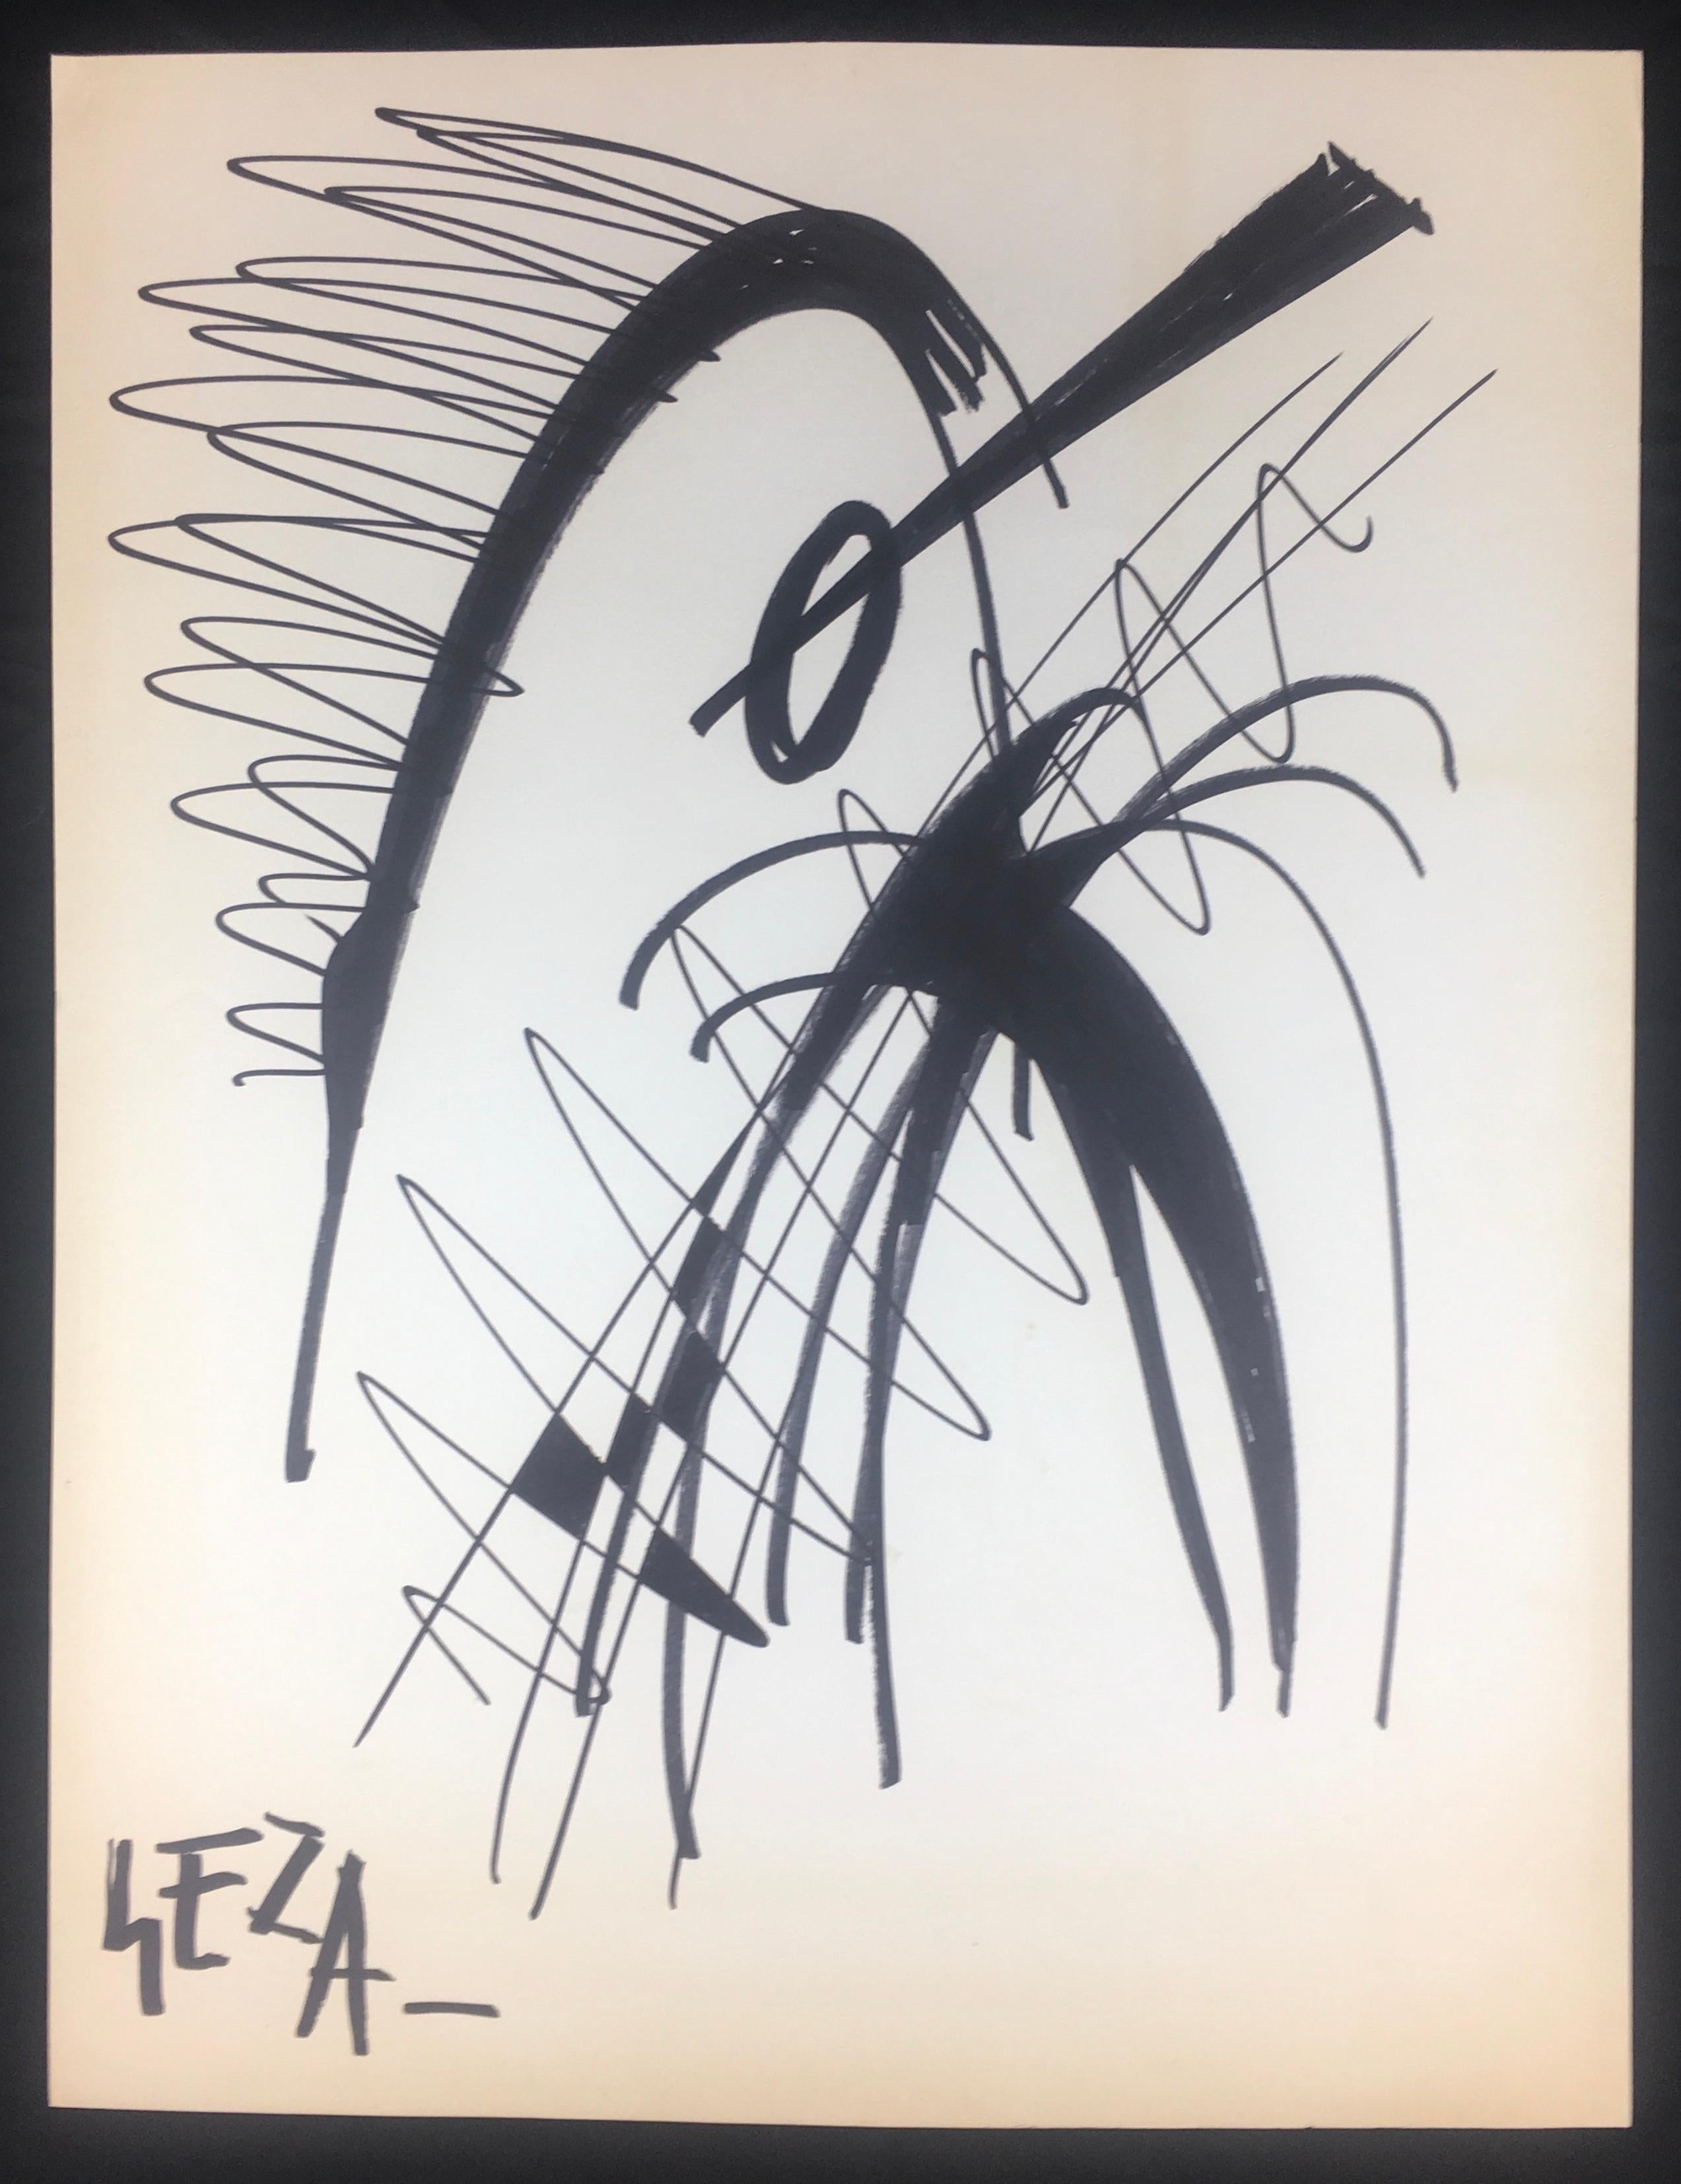 Collection très décorative de dessins abstraits modernes signés Geza et datés de 1988. Attribué à Geza Skobel. 

Geza Szobel (1905-1963) est un peintre hongrois naturalisé français. Il a fait toute sa carrière à Paris entre 1935 et 1963. À Paris,